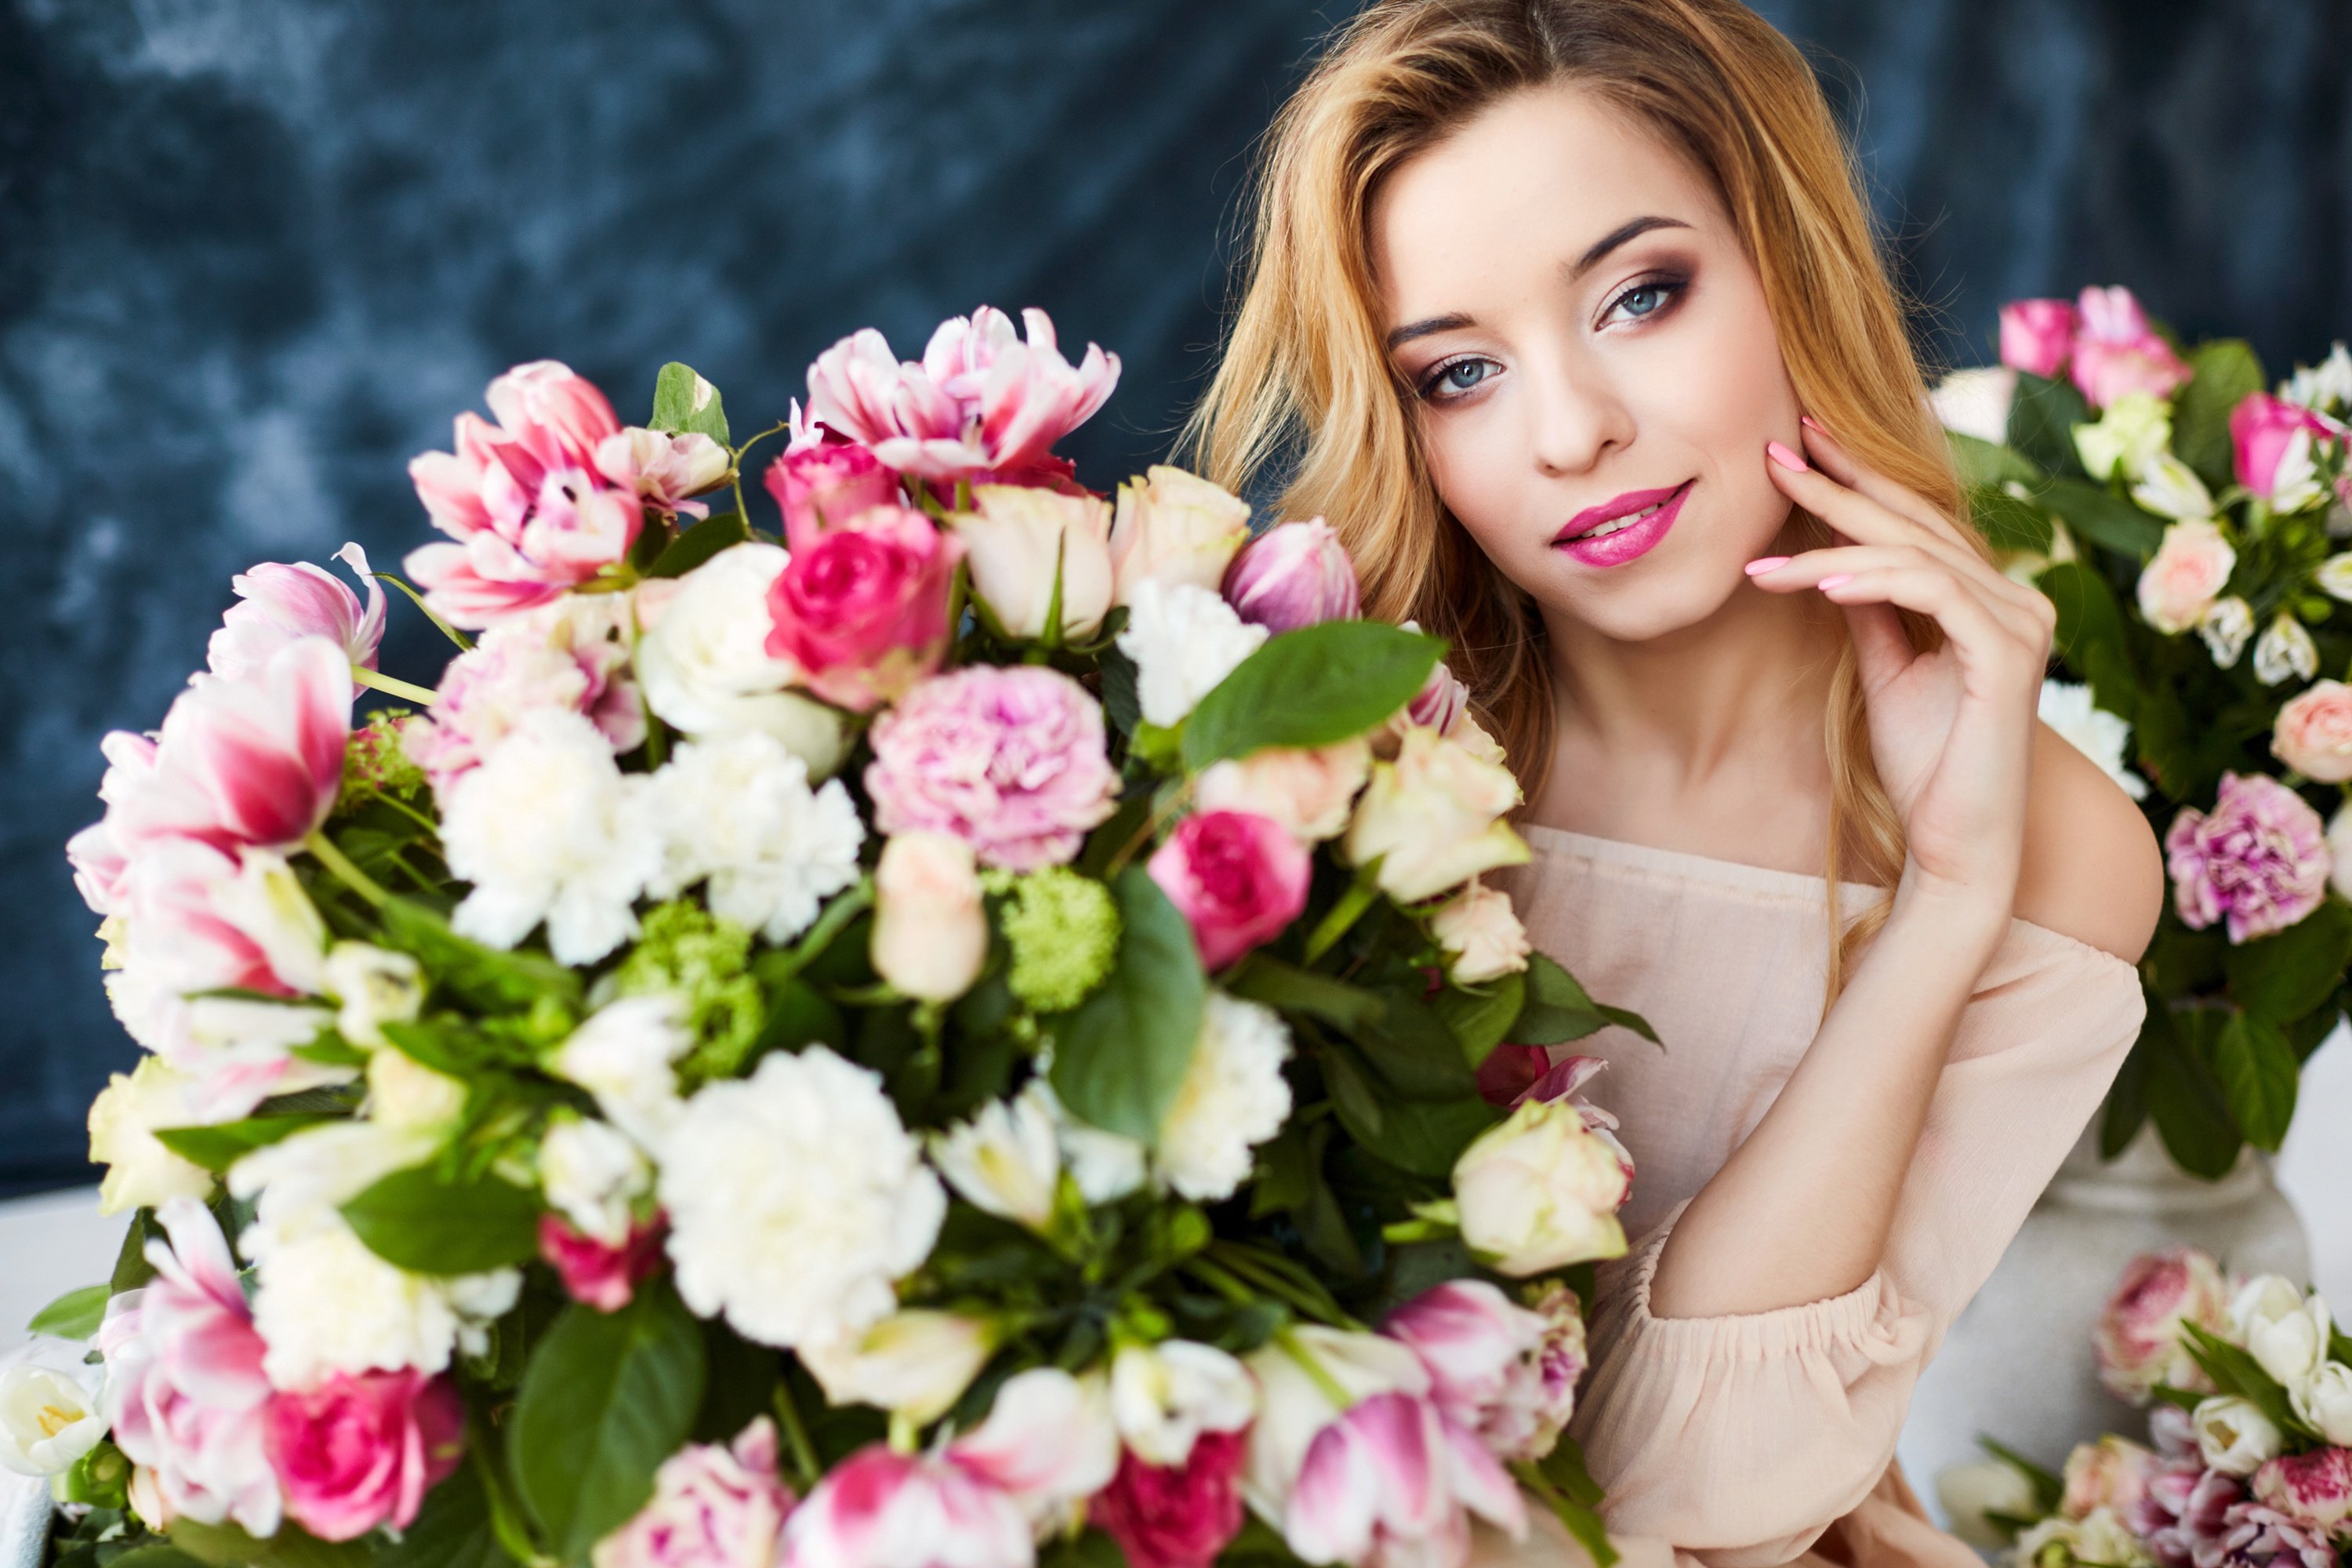 Девушка нюхает цветы: изображения без лицензионных платежей